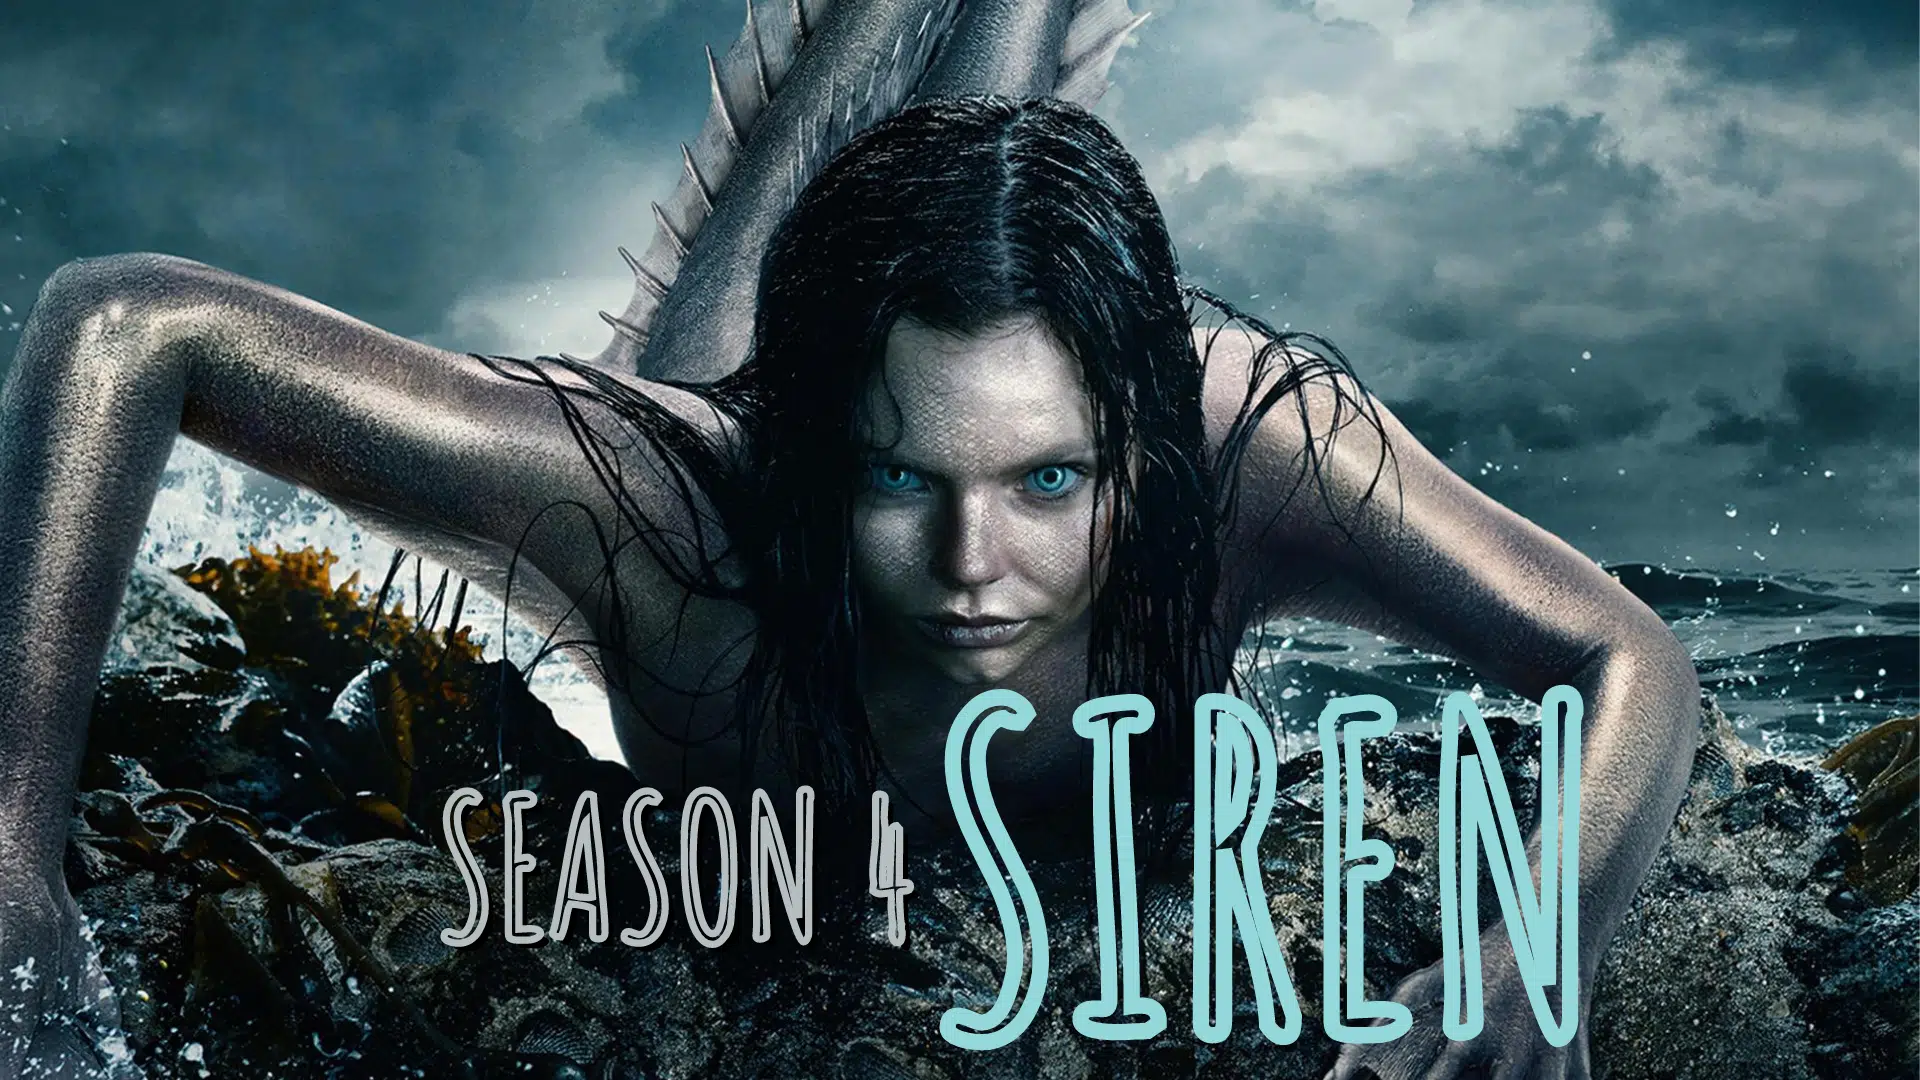 Siren season 4